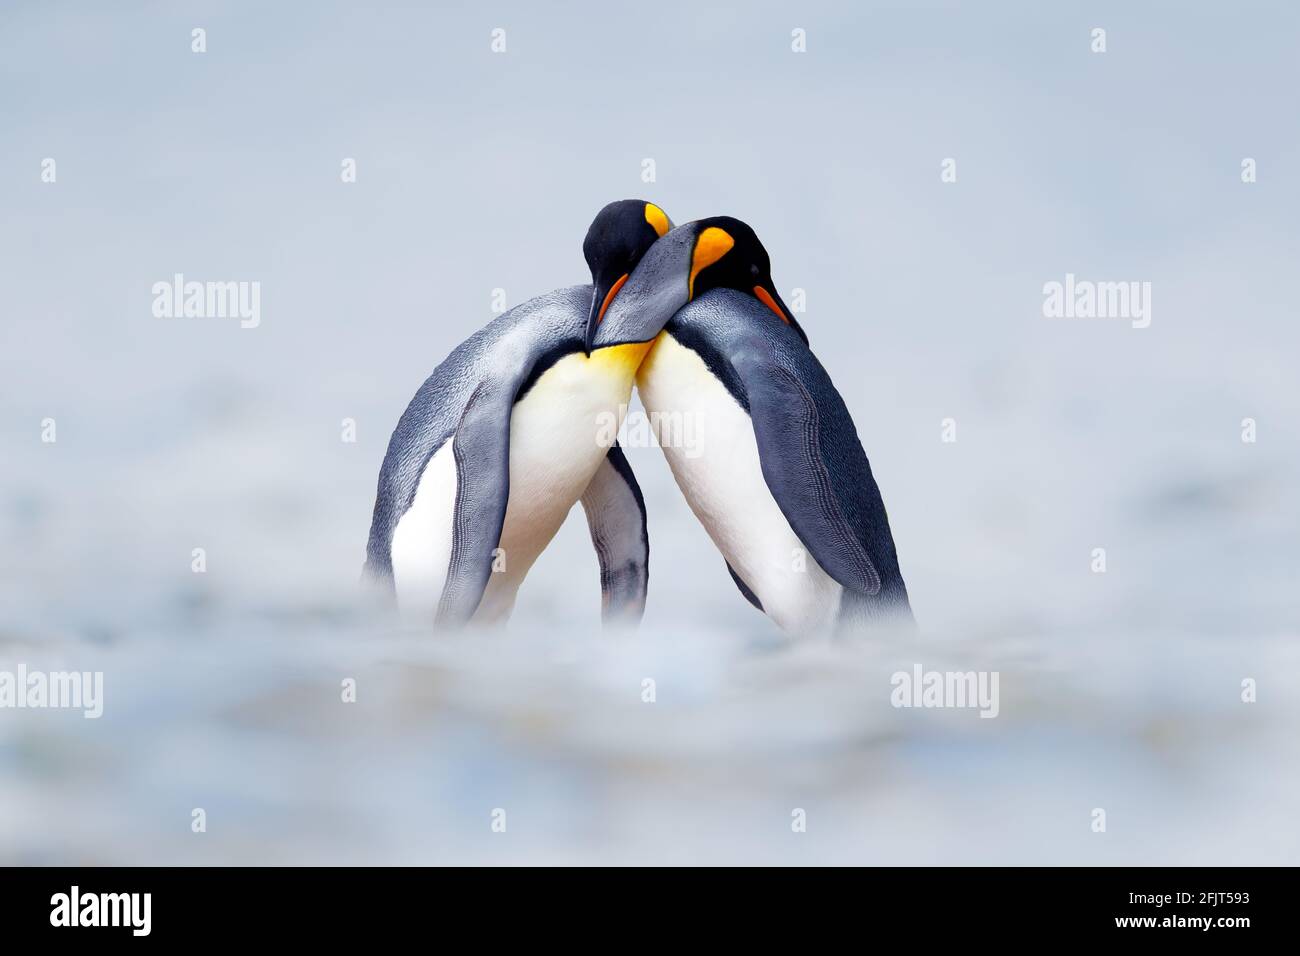 Couple d'accouplement de pingouins de roi en pleine nature, neige et glace. Associez deux pingouins qui font l'amour. Scène sauvage de nature blanche. Comportement des oiseaux, sauvage Banque D'Images